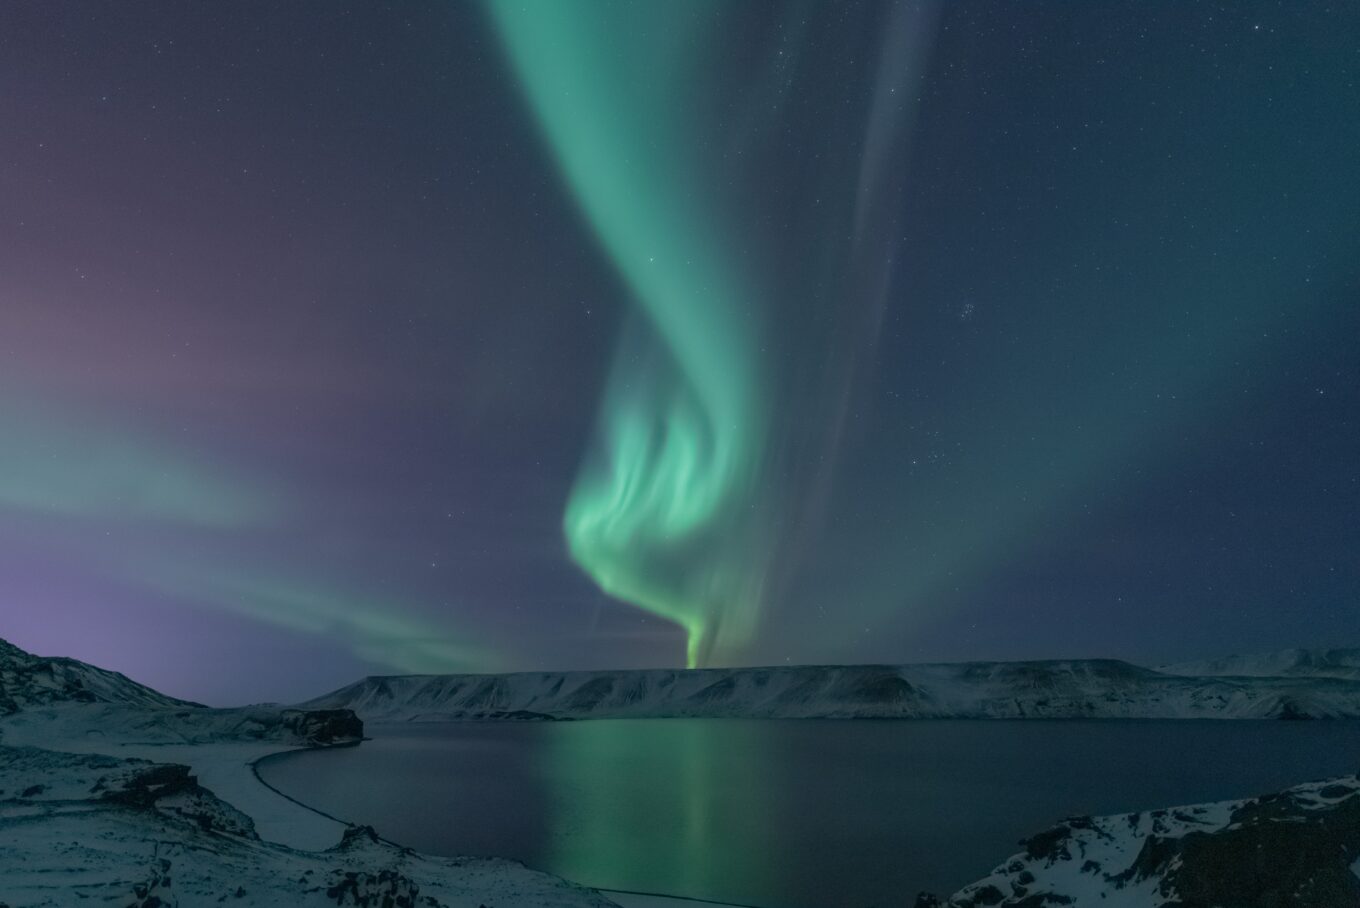 Tips Noorderlicht zien - Noorderlicht zien wanneer - Wanneer Noorderlicht Noorwegen - IJsland Noorderlicht - Noorderlicht Finland wanneer - Noorderlicht Lapland - Noorderlicht Finland